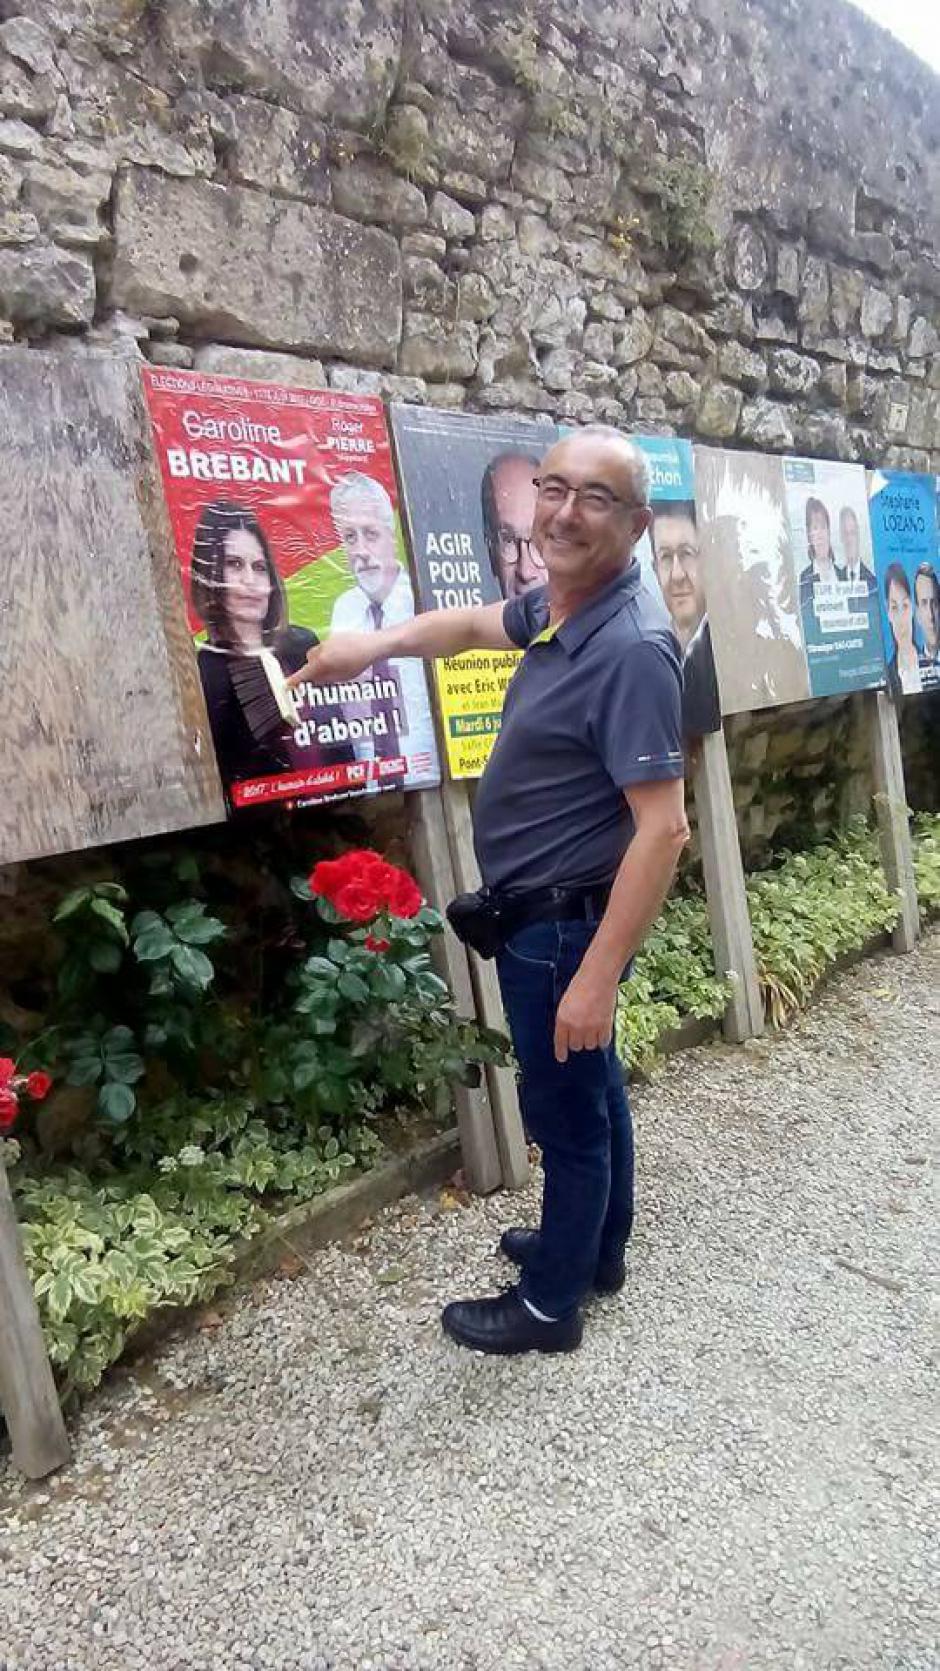 [Album Photos] Collage sur les panneaux officiels - 4e circonscription de l'Oise, 4 juin 2017